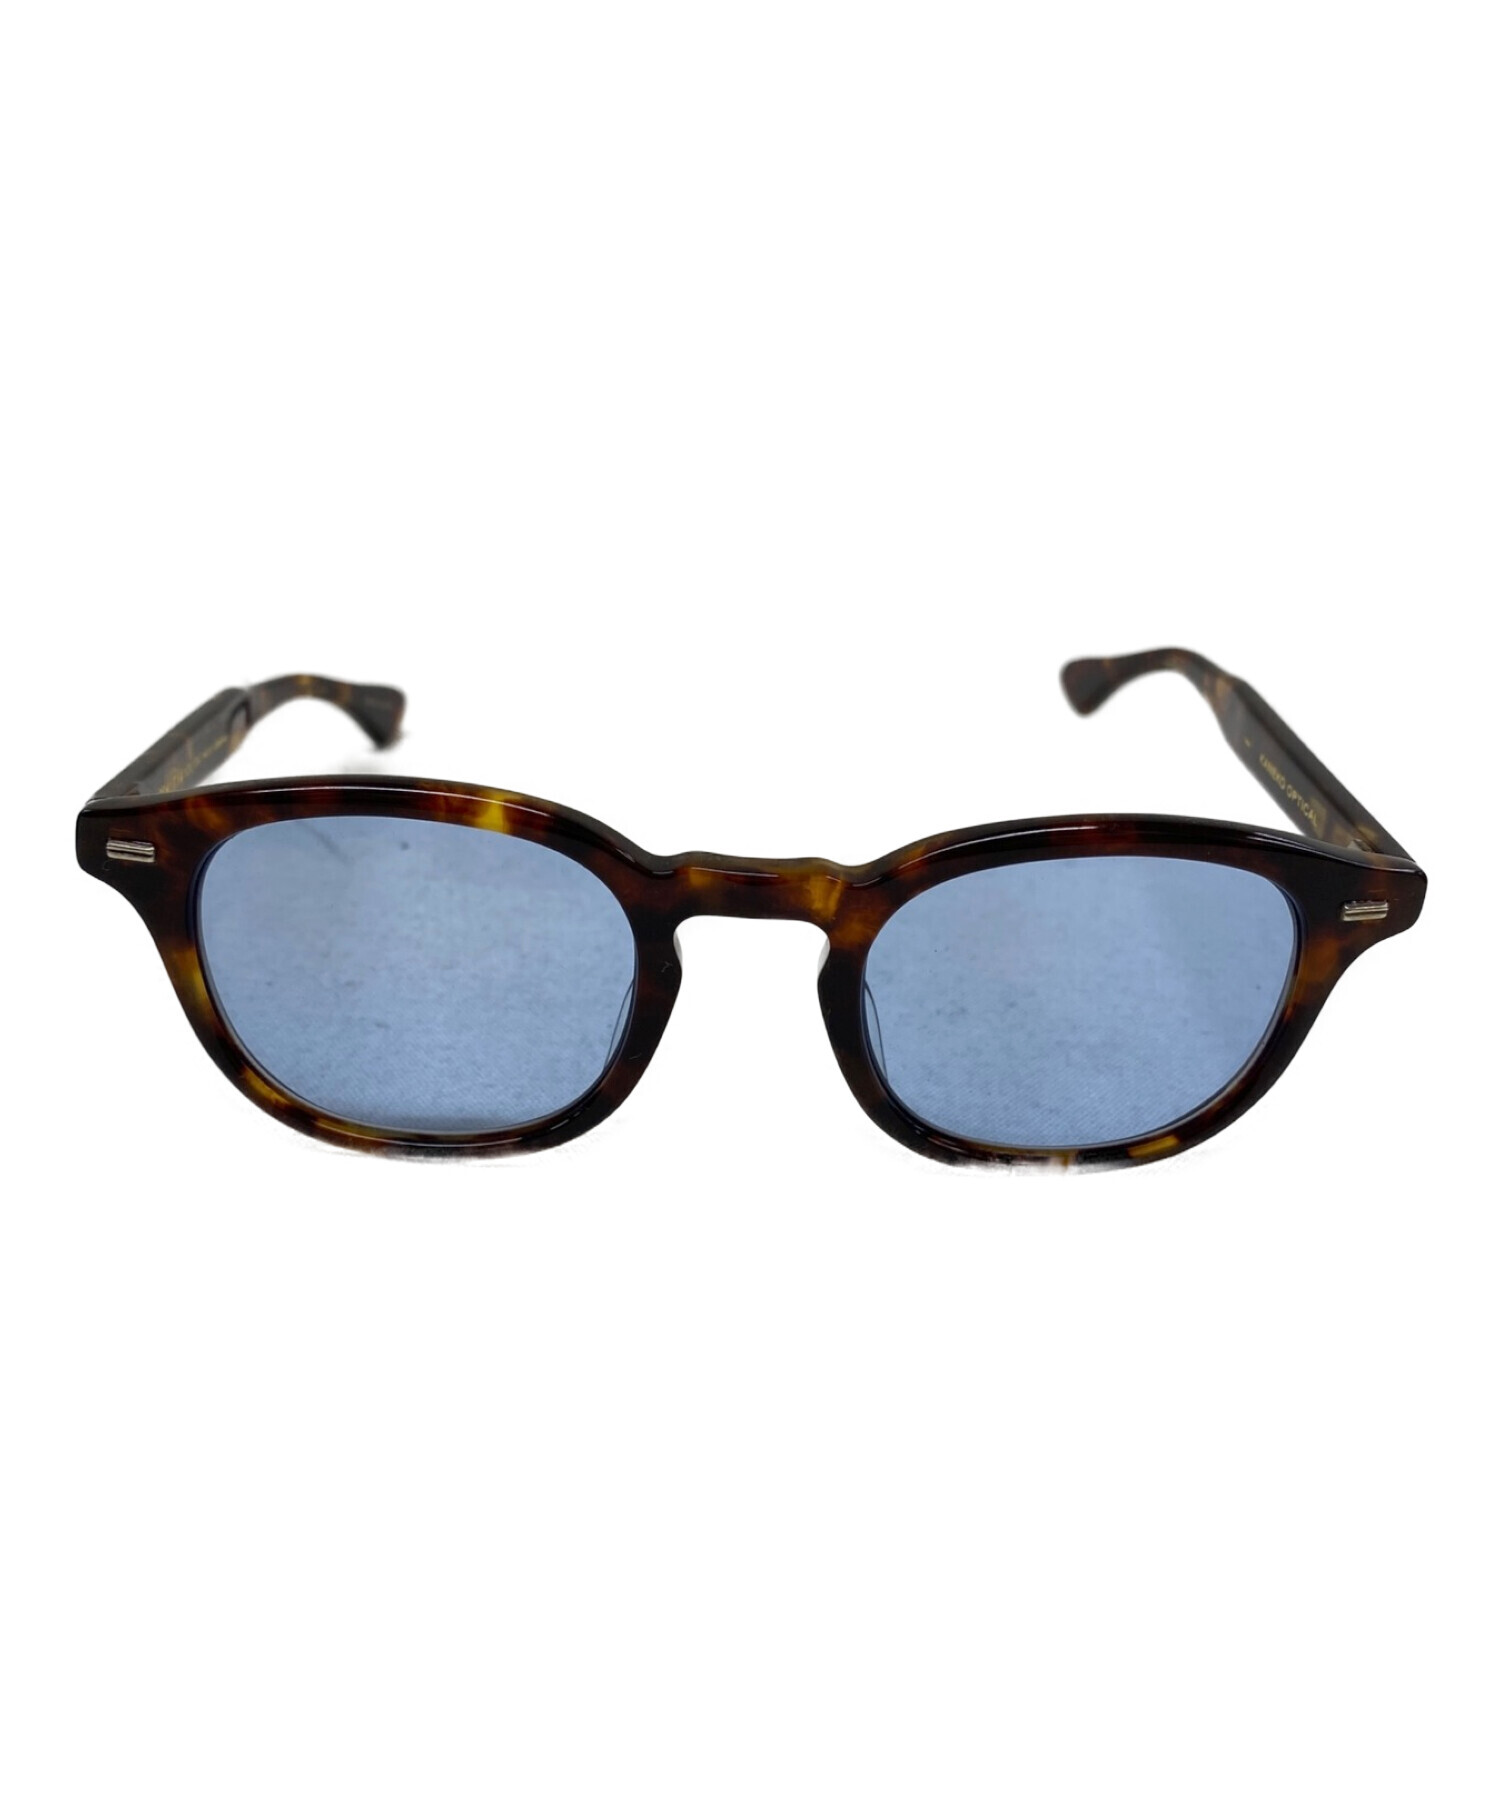 金子眼鏡 (カネコメガネ) BEAUTY&YOUTH (ビューティーアンドユース) 伊達眼鏡 鼈甲レンズブルー